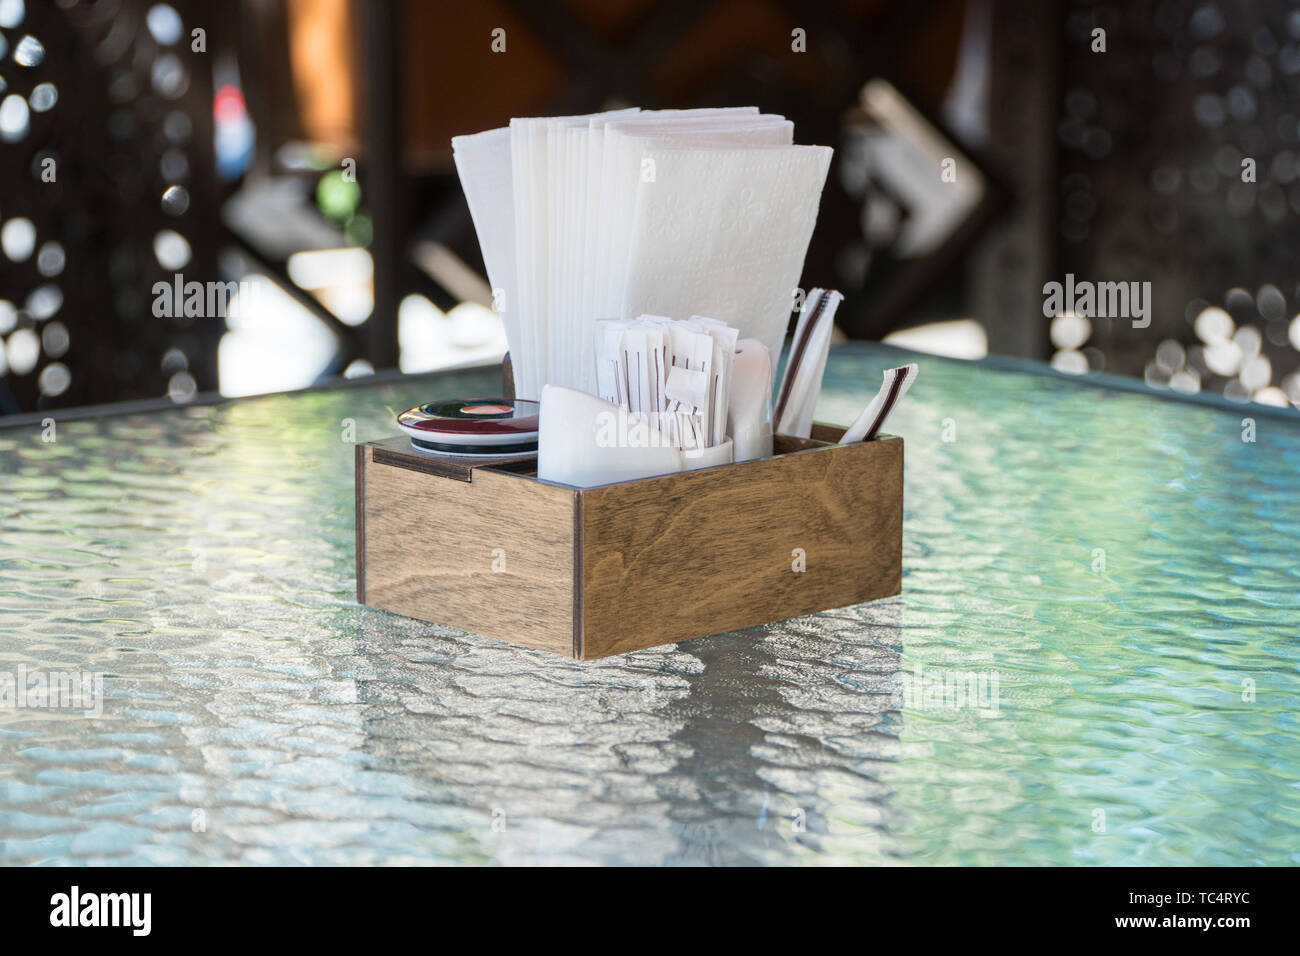 Box mit Papier Servietten auf einem Glastisch, close-up. Teil der Tabelle Einstellung im Sommer Cafe Stockfoto